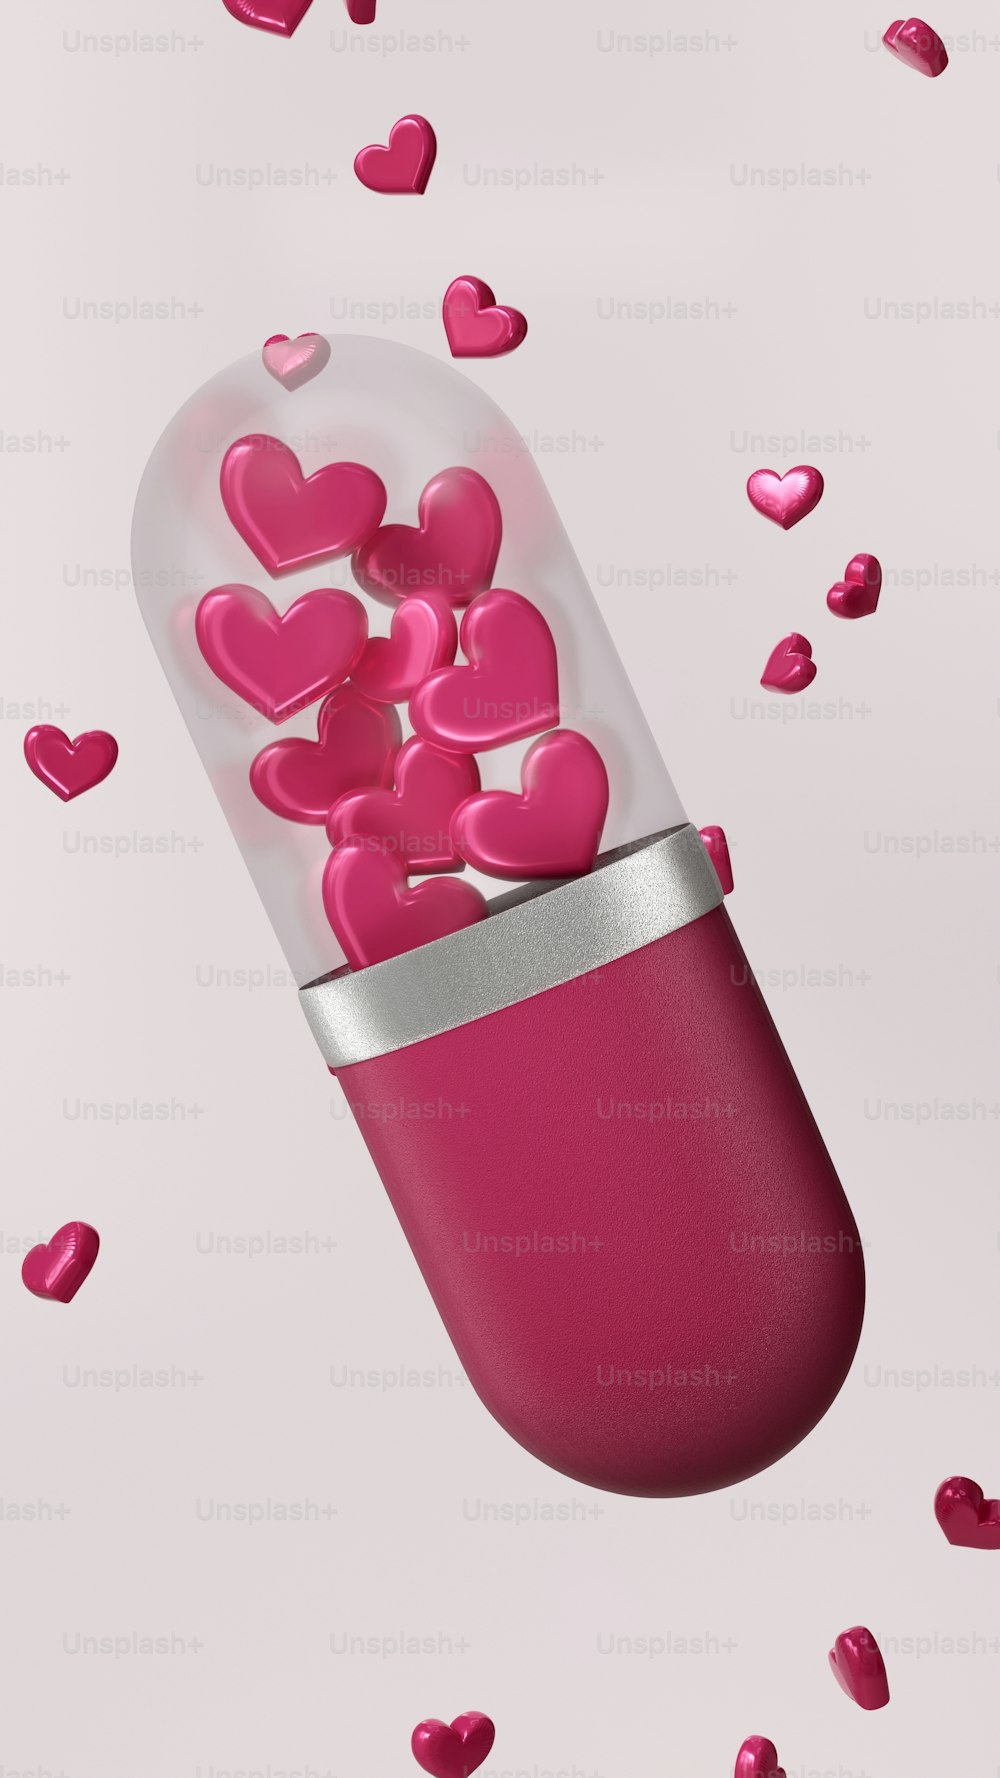 Une pilule rose remplie de cœurs roses sur fond rose